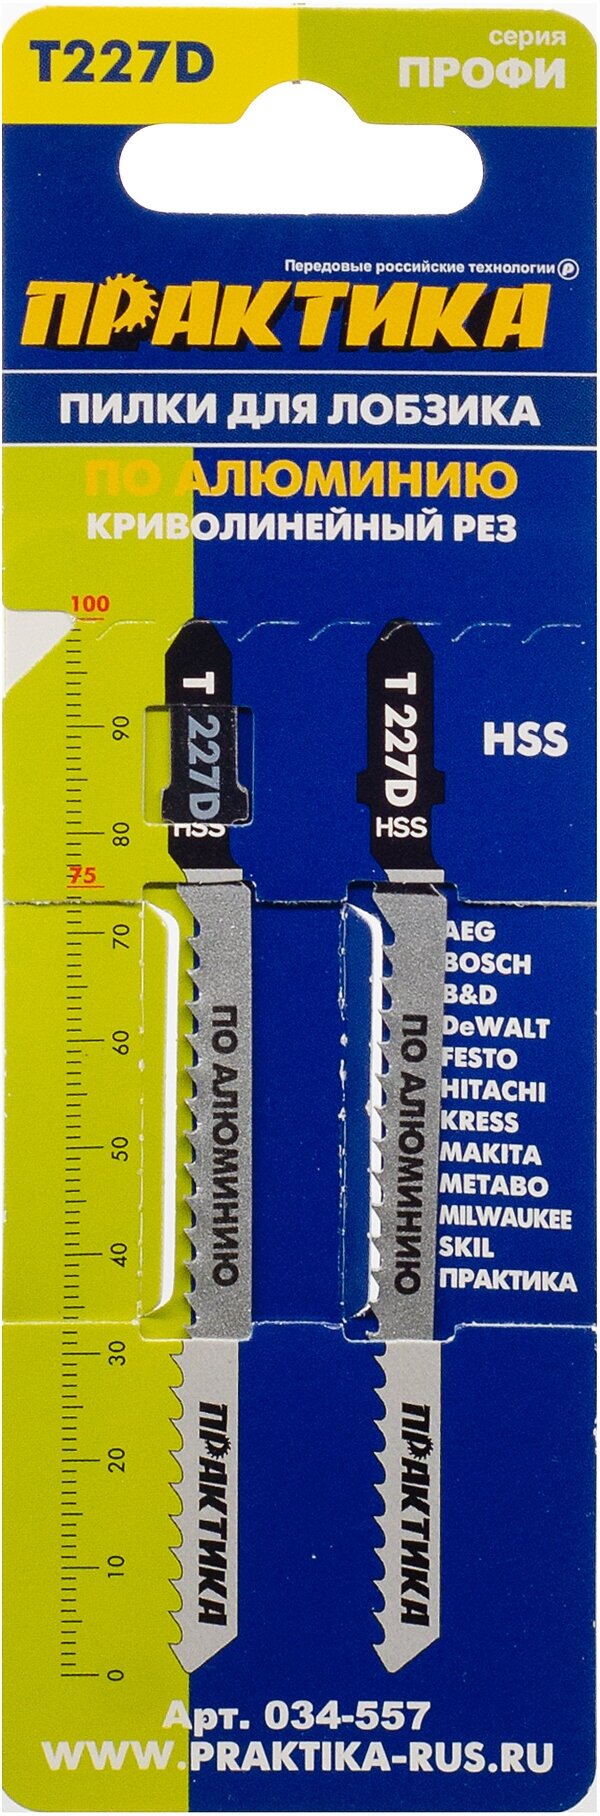 Пилки для лобзика по алюминию ПРАКТИКА тип T227D 100 х 75 мм, криволинейный рез, HSS (2шт.)